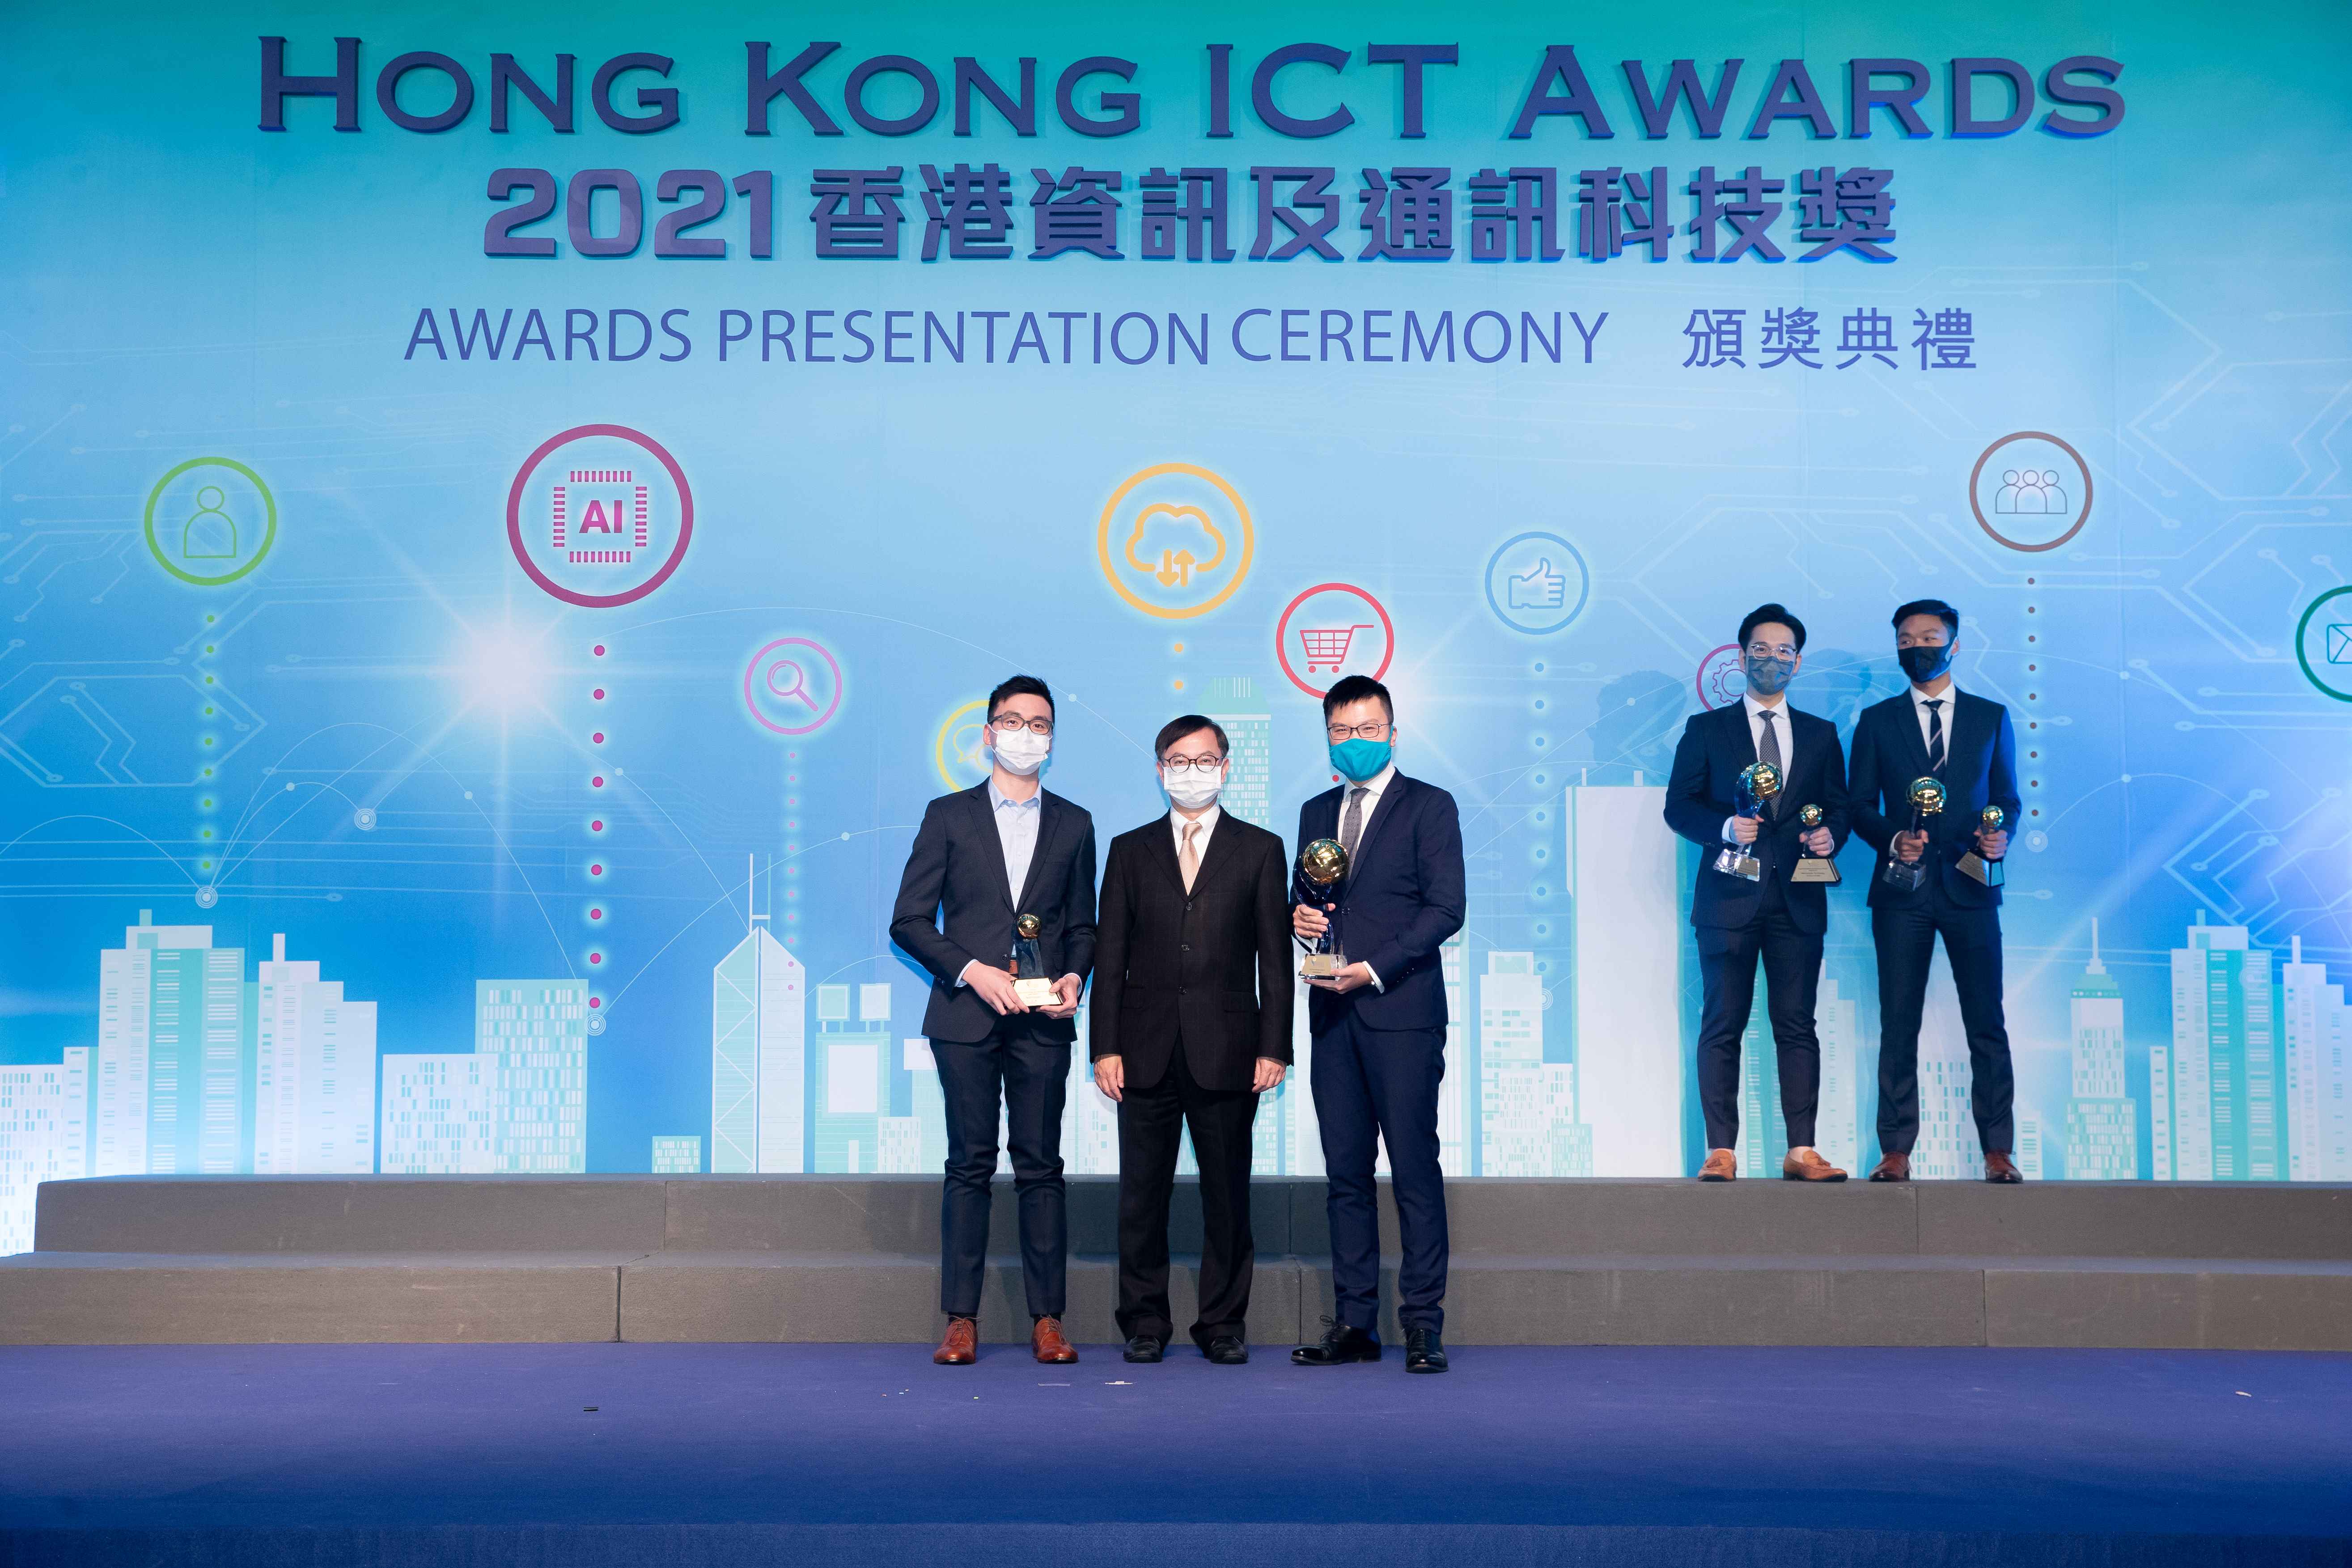 香港銀行學會將於7月14日舉辦分享會，邀請上屆的金獎及大獎得主分享經驗。（HKICT Awards網上圖片）